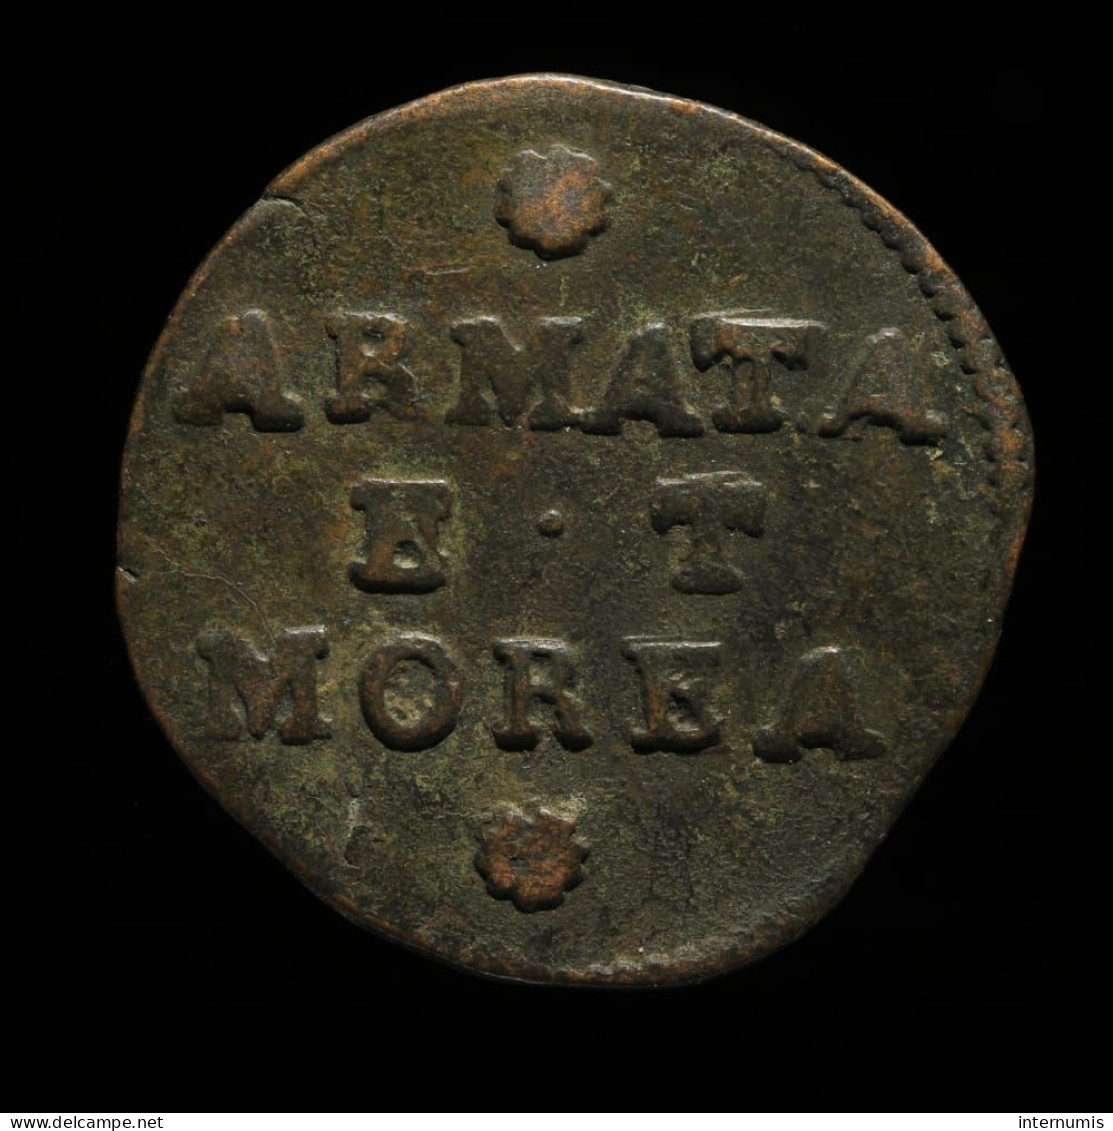 RARE - Italie / Italy, SAN MARC VEN. / ARMATA ET MOREA, 2 Soldi (Gazzetta), ND (1688-1690), Venice, Cuivre (Copper) - Venedig